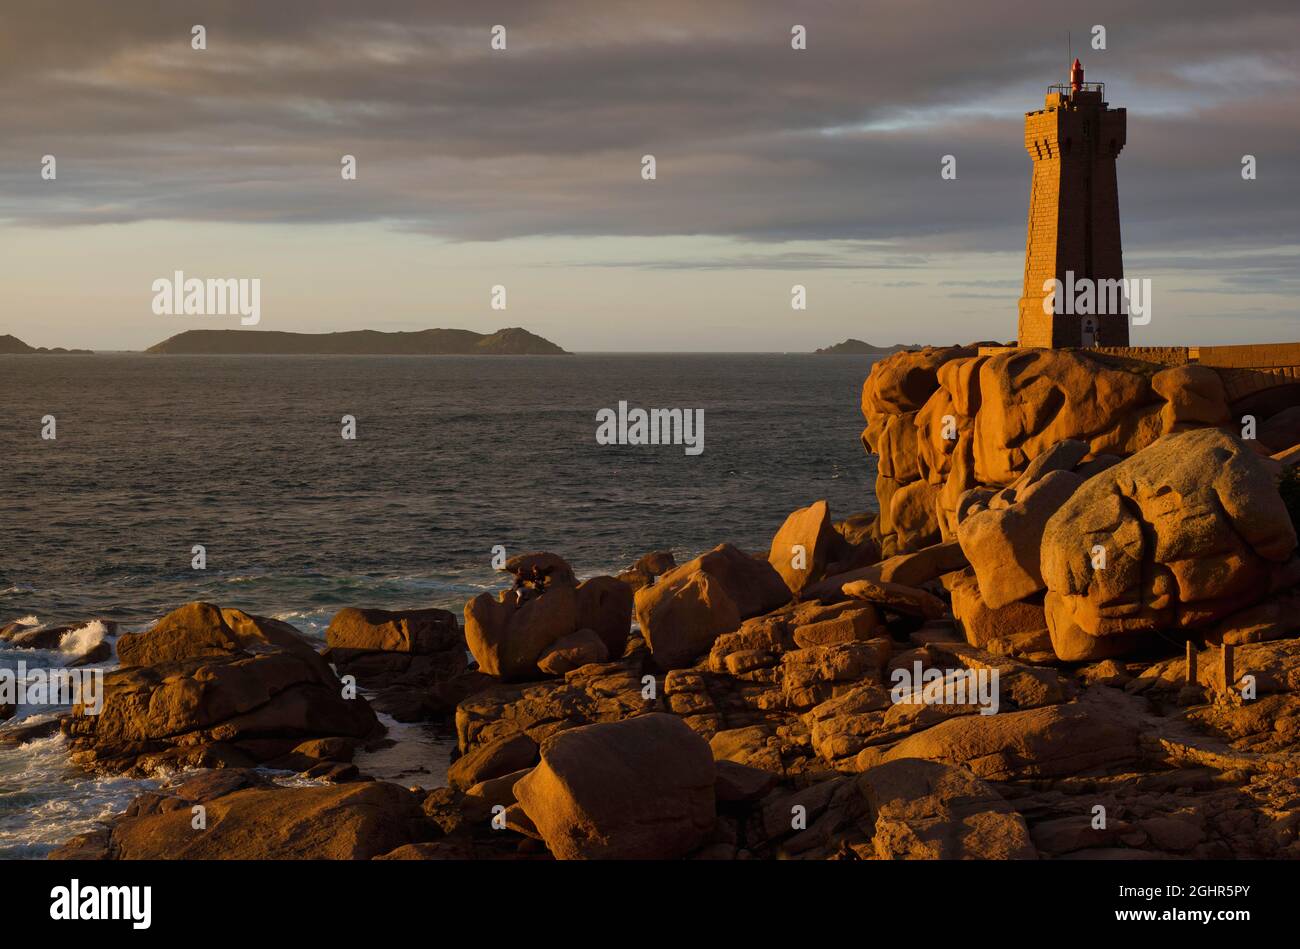 Phare de Ploumanac'h Lighthouse, Granite Rock, Ploumanac'h, Cote de Granit Rose, Cotes-d'Armor, Brittany, France Stock Photo